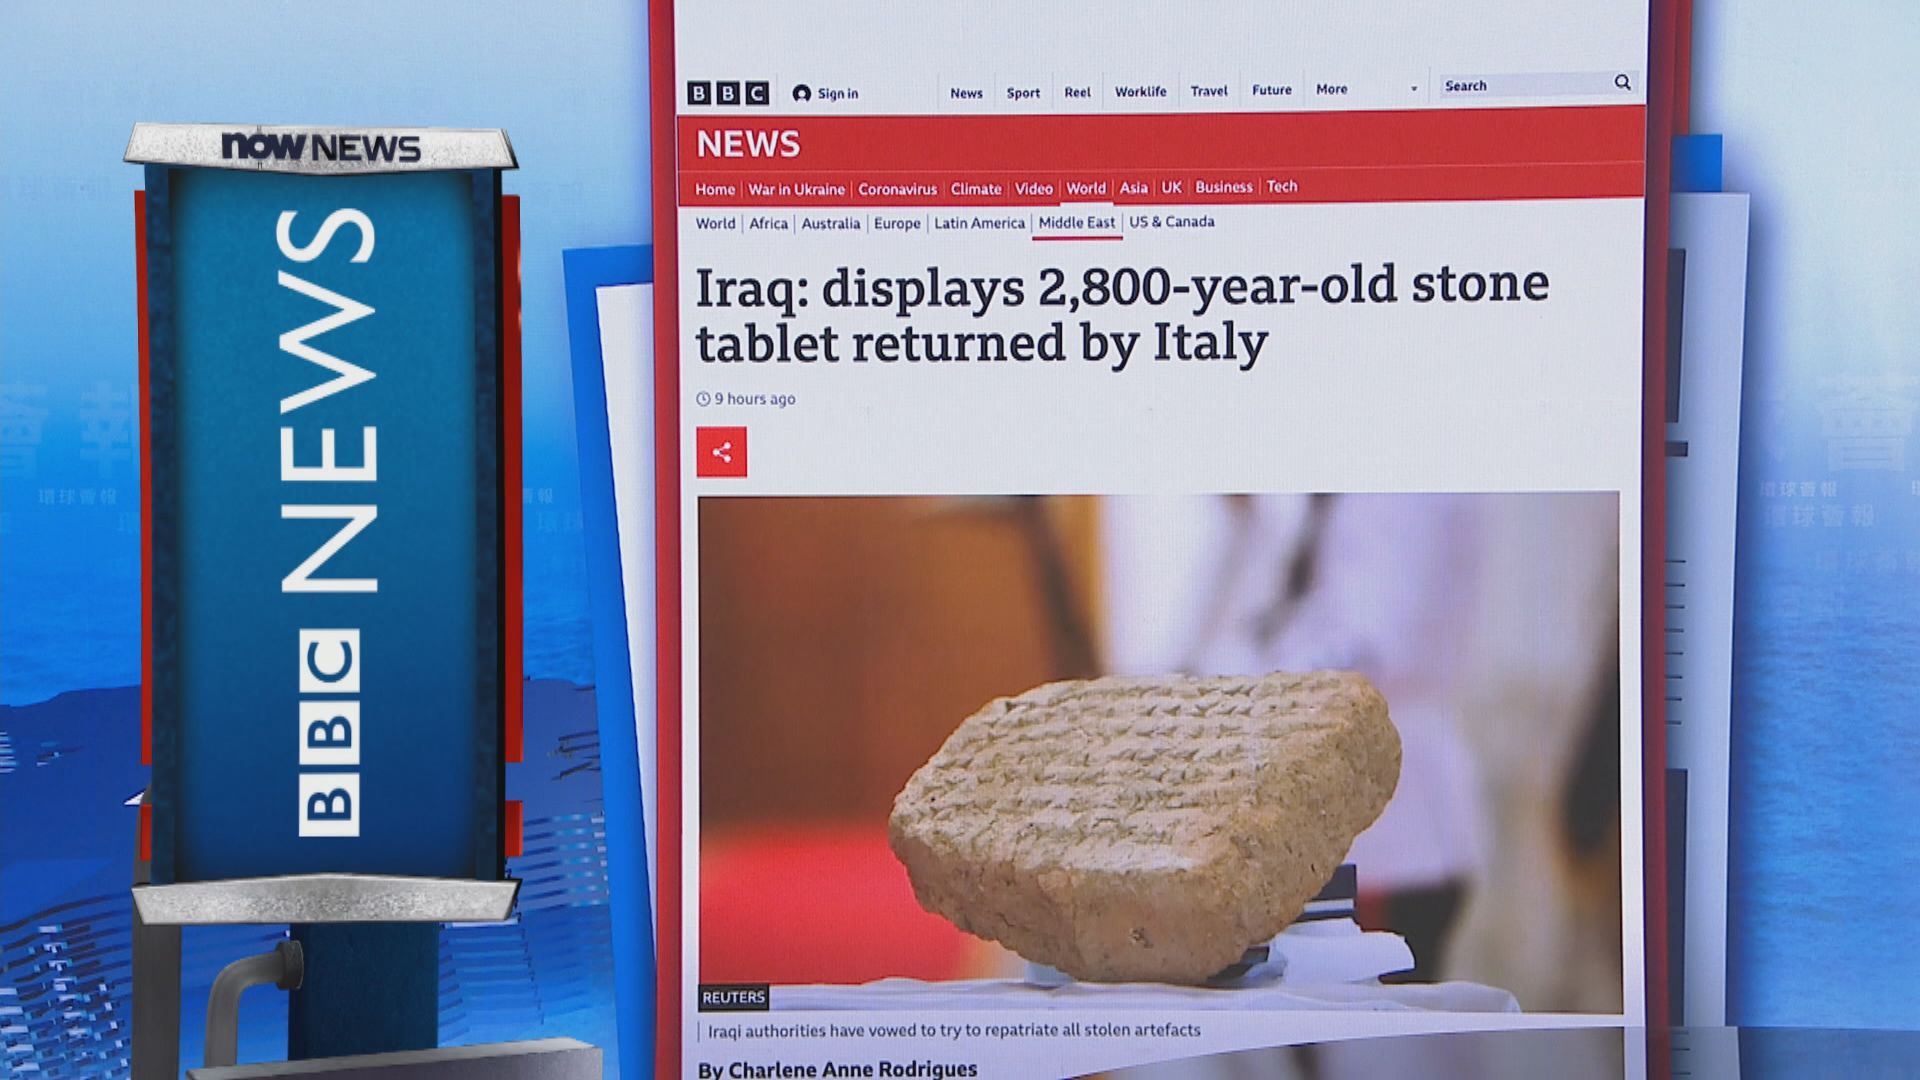 【環球薈報】伊拉克展示意大利獲歸還有2800年歷史的楔形文字石碑